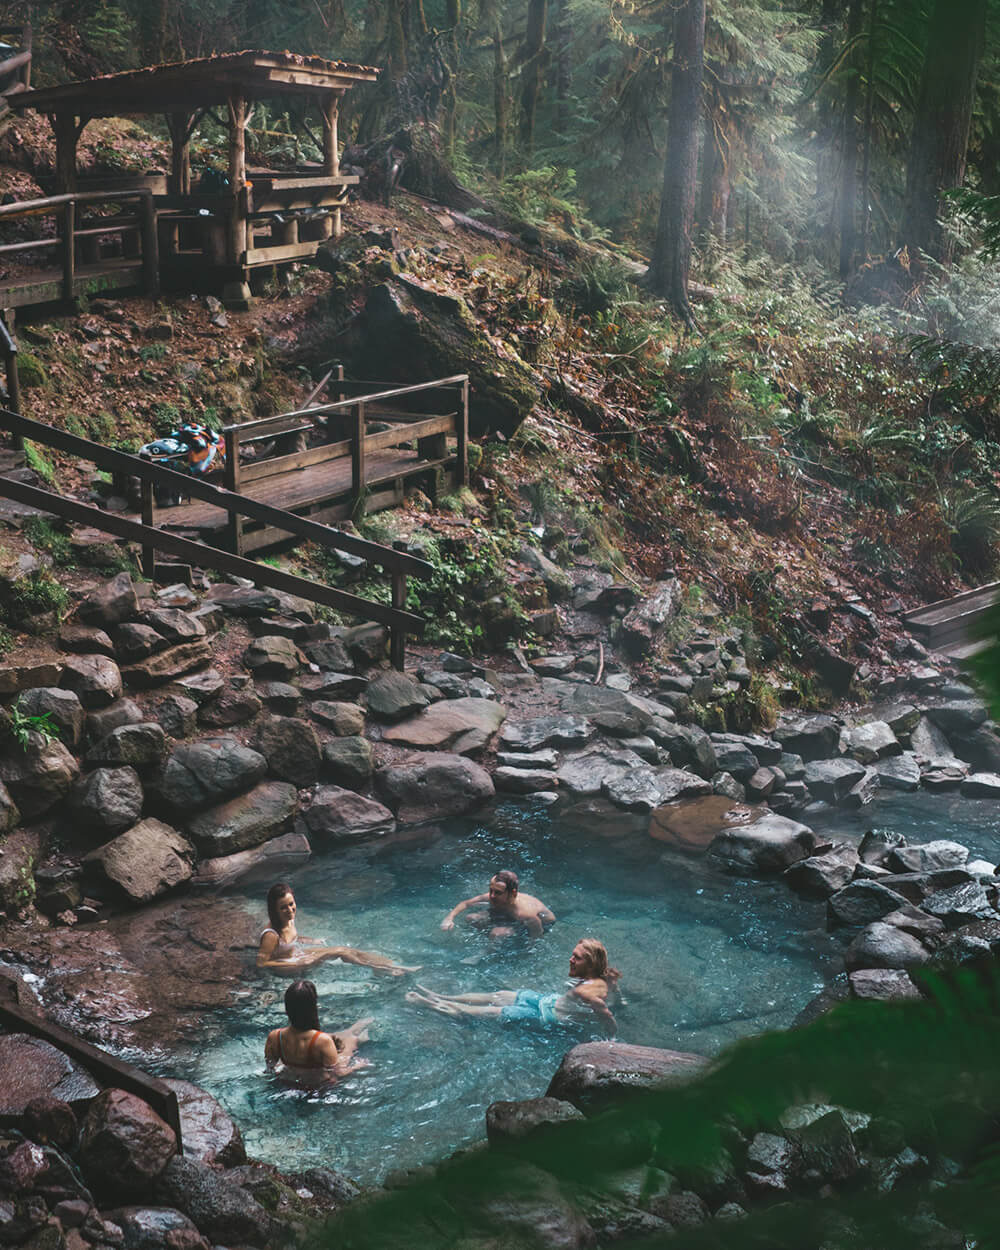 4 people enjoying Cougar Hot Springs